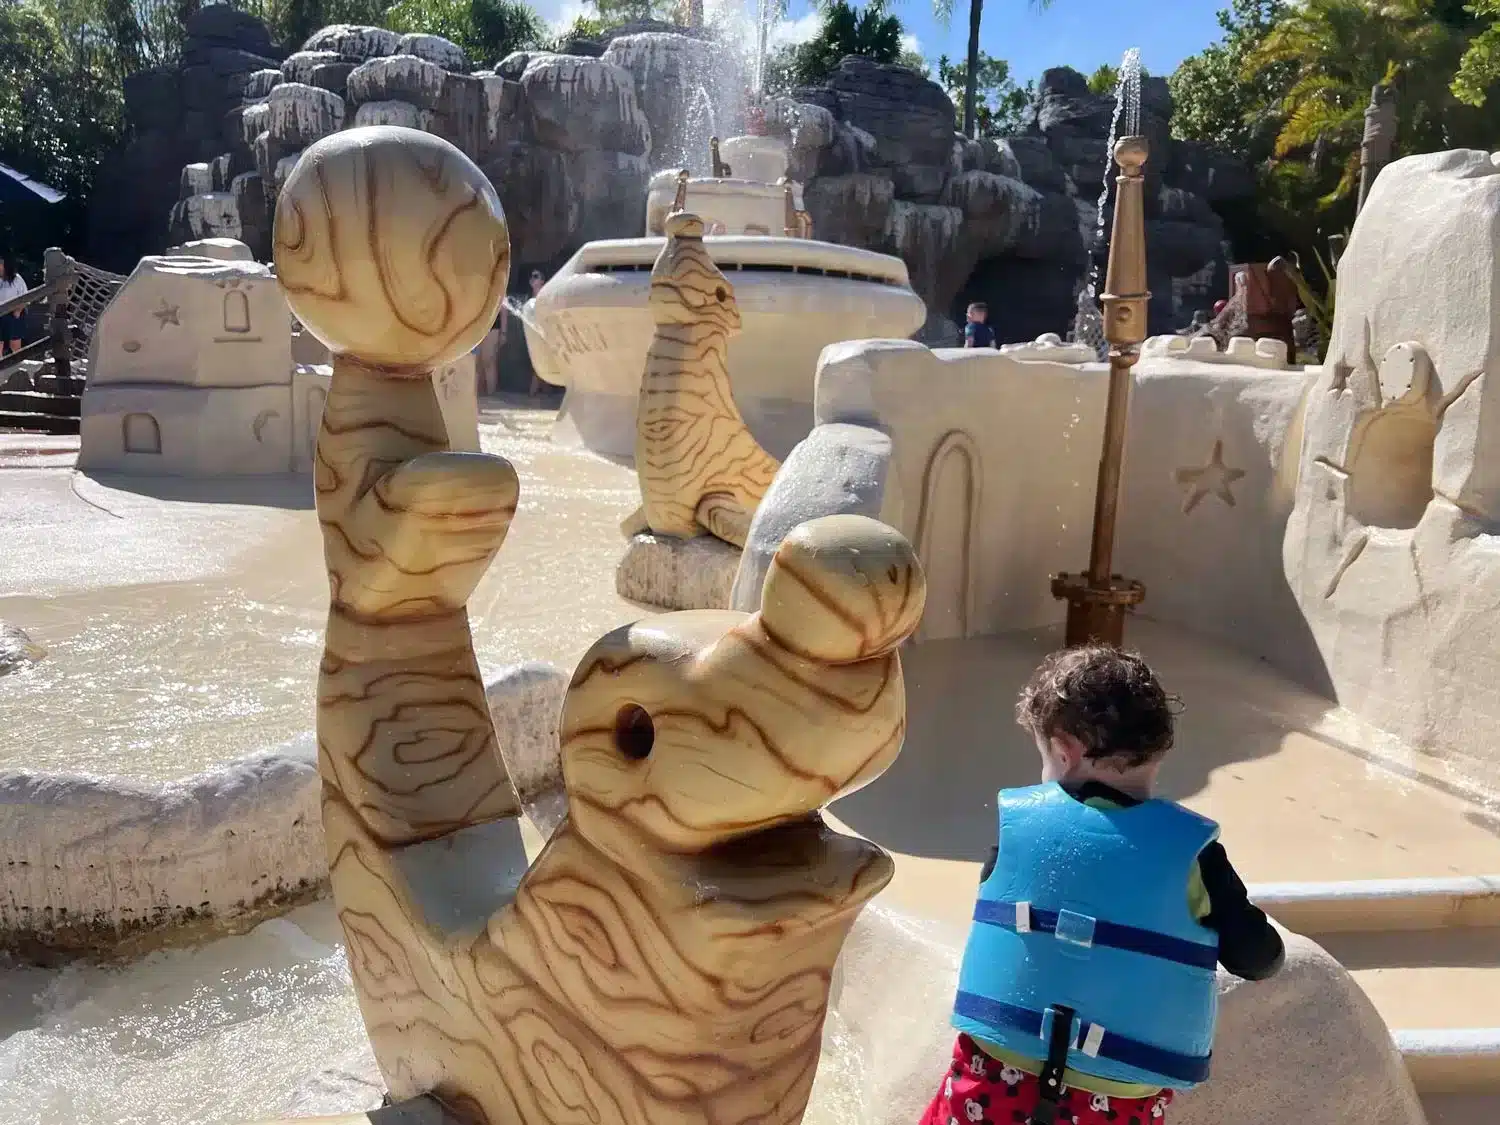 Toddler at Typhoon Lagoon - Disney World